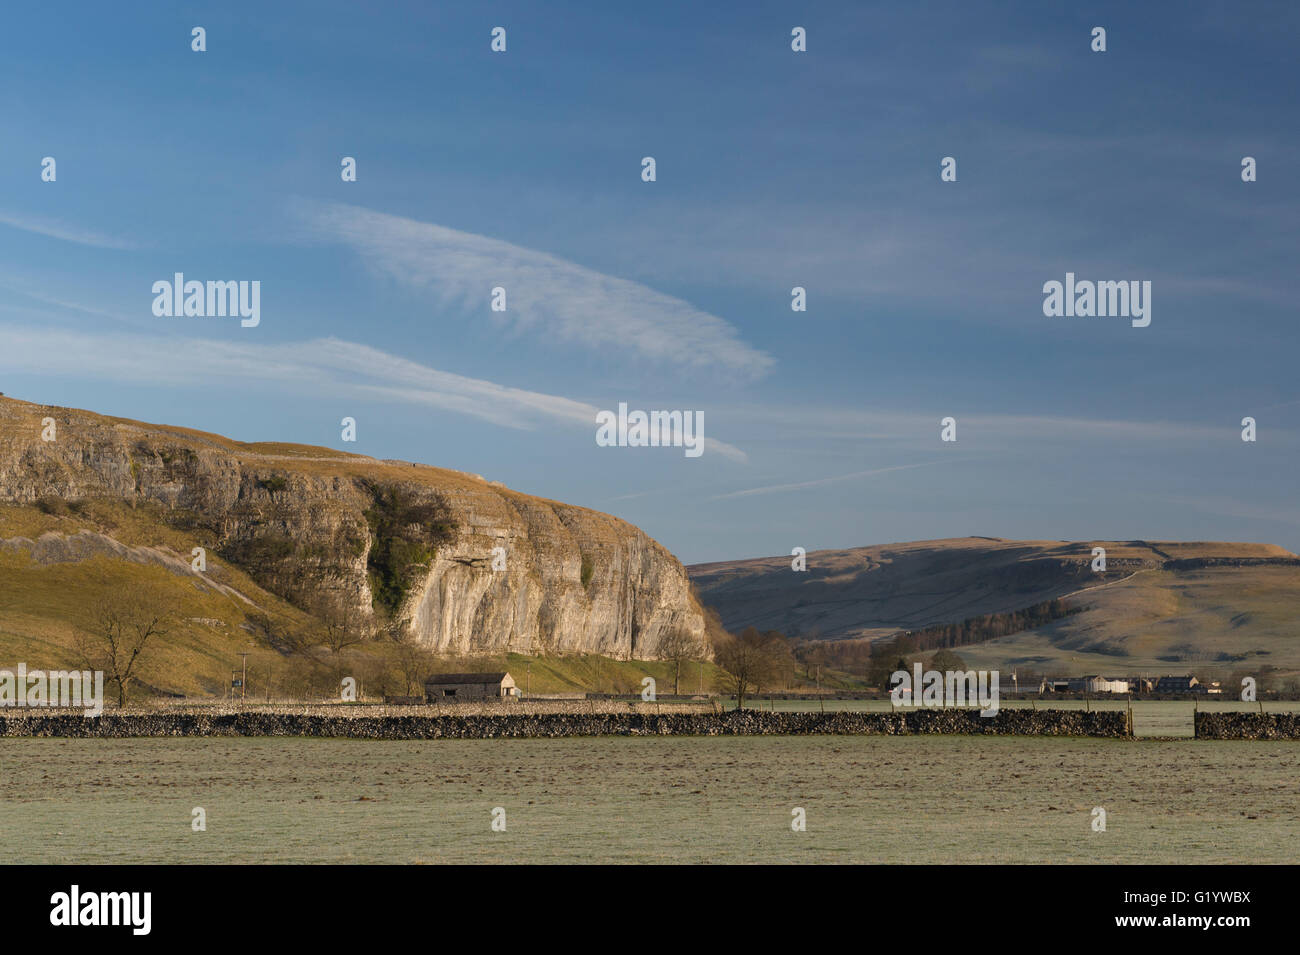 Malerisches Wharfe Valley (sanfte Hügel und Moore, sonnenbeschienenen hohen Kalksteinfelsen (Kilnsey Crag) & tiefblauer Himmel - Wharfedale, Yorkshire Dales, England, Großbritannien. Stockfoto